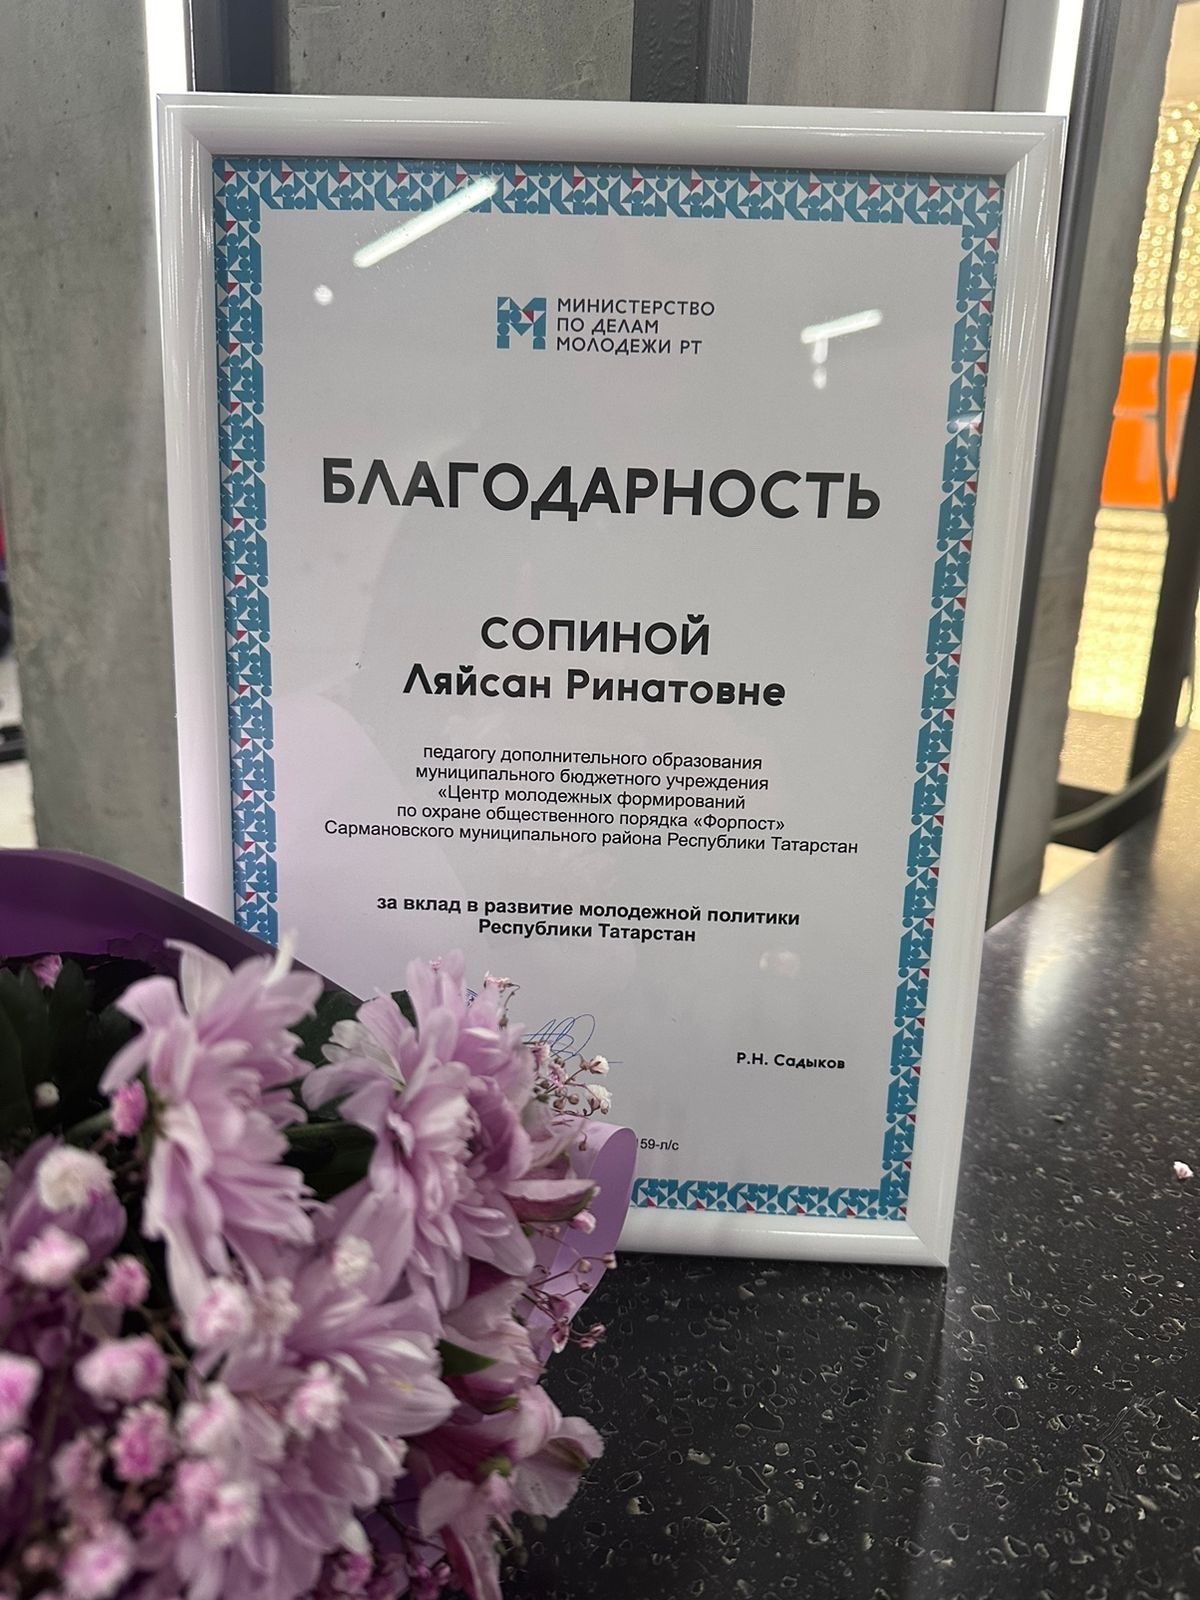 Педагог центра «Форпост» в Сарманово награждена за вклад в развитие молодежной политики РТ